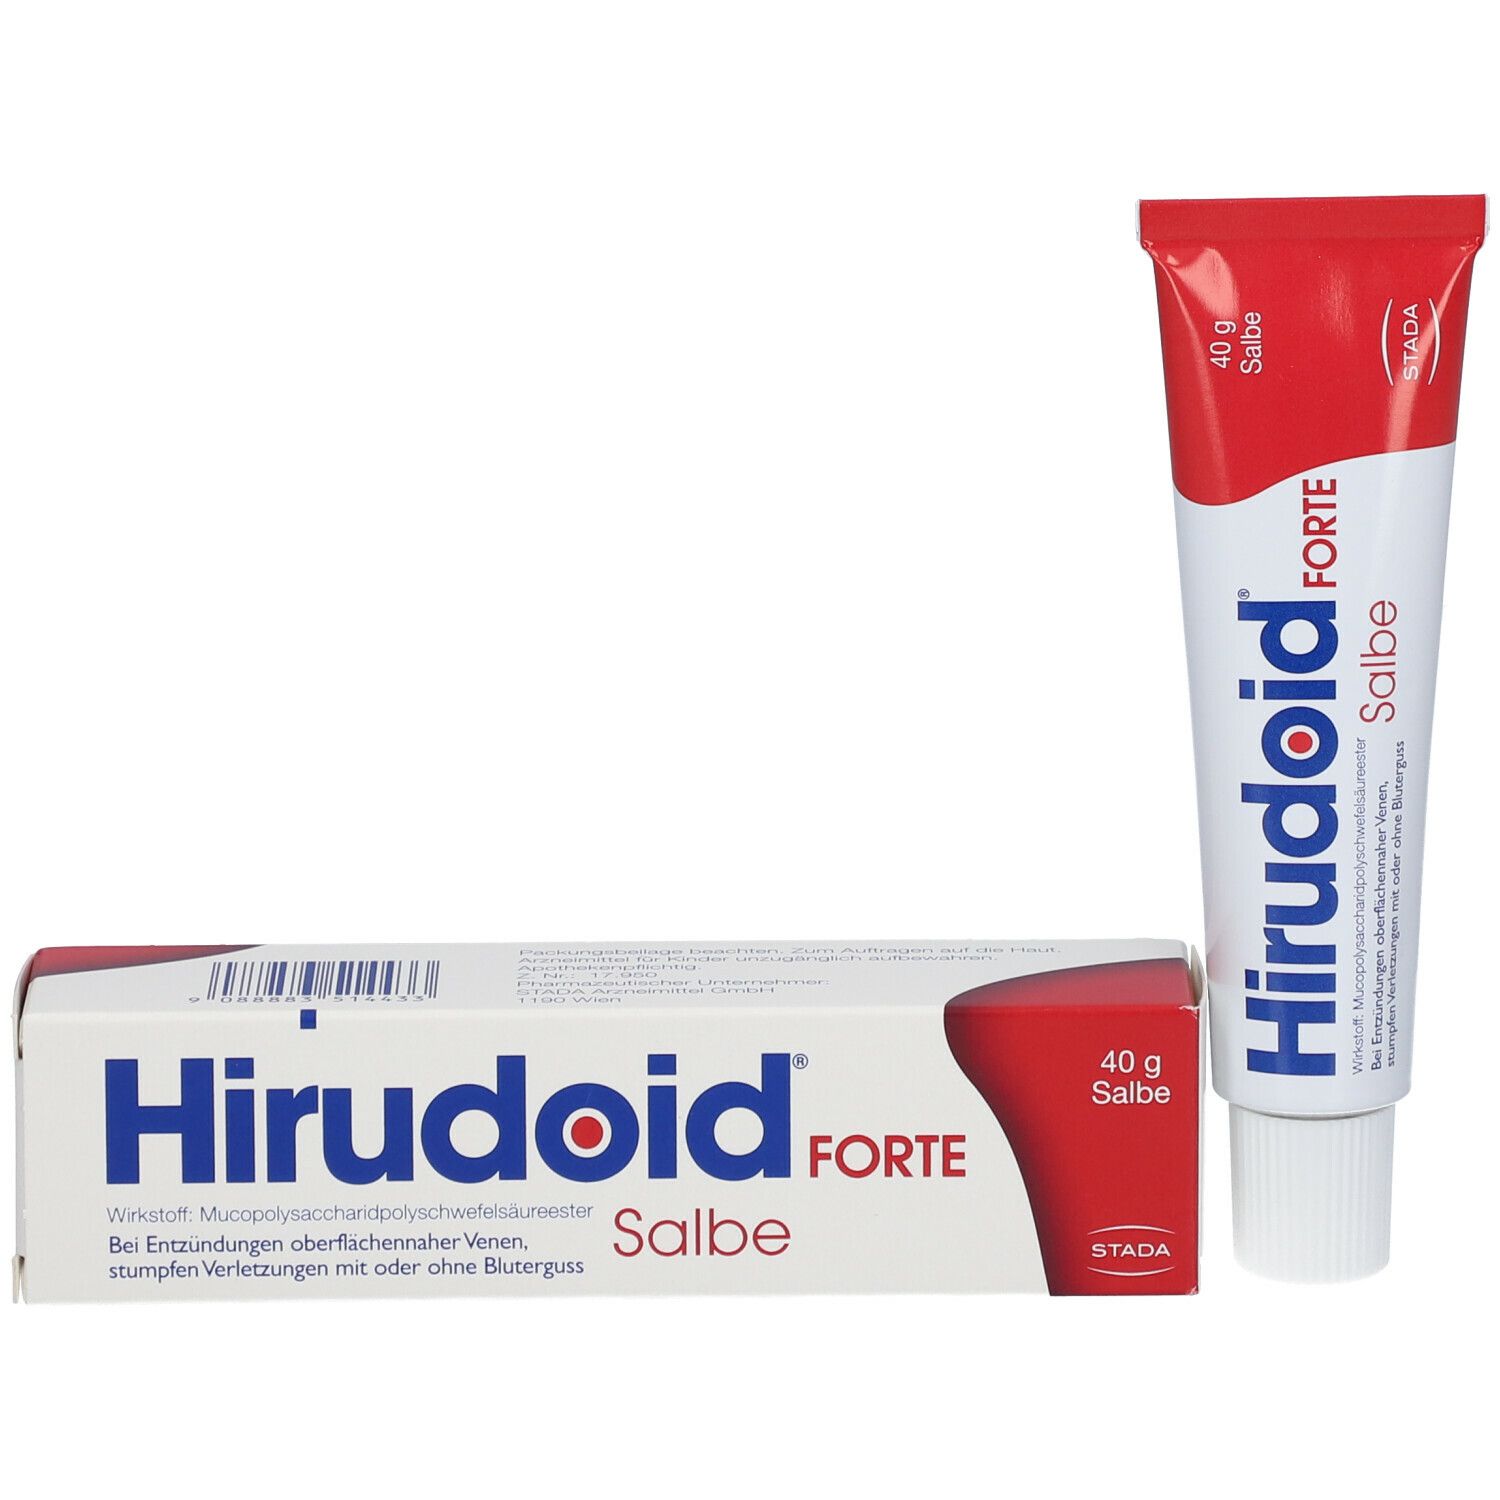 Hirudoid® Forte Salbe bei Venenentzündungen und Blutergüssen